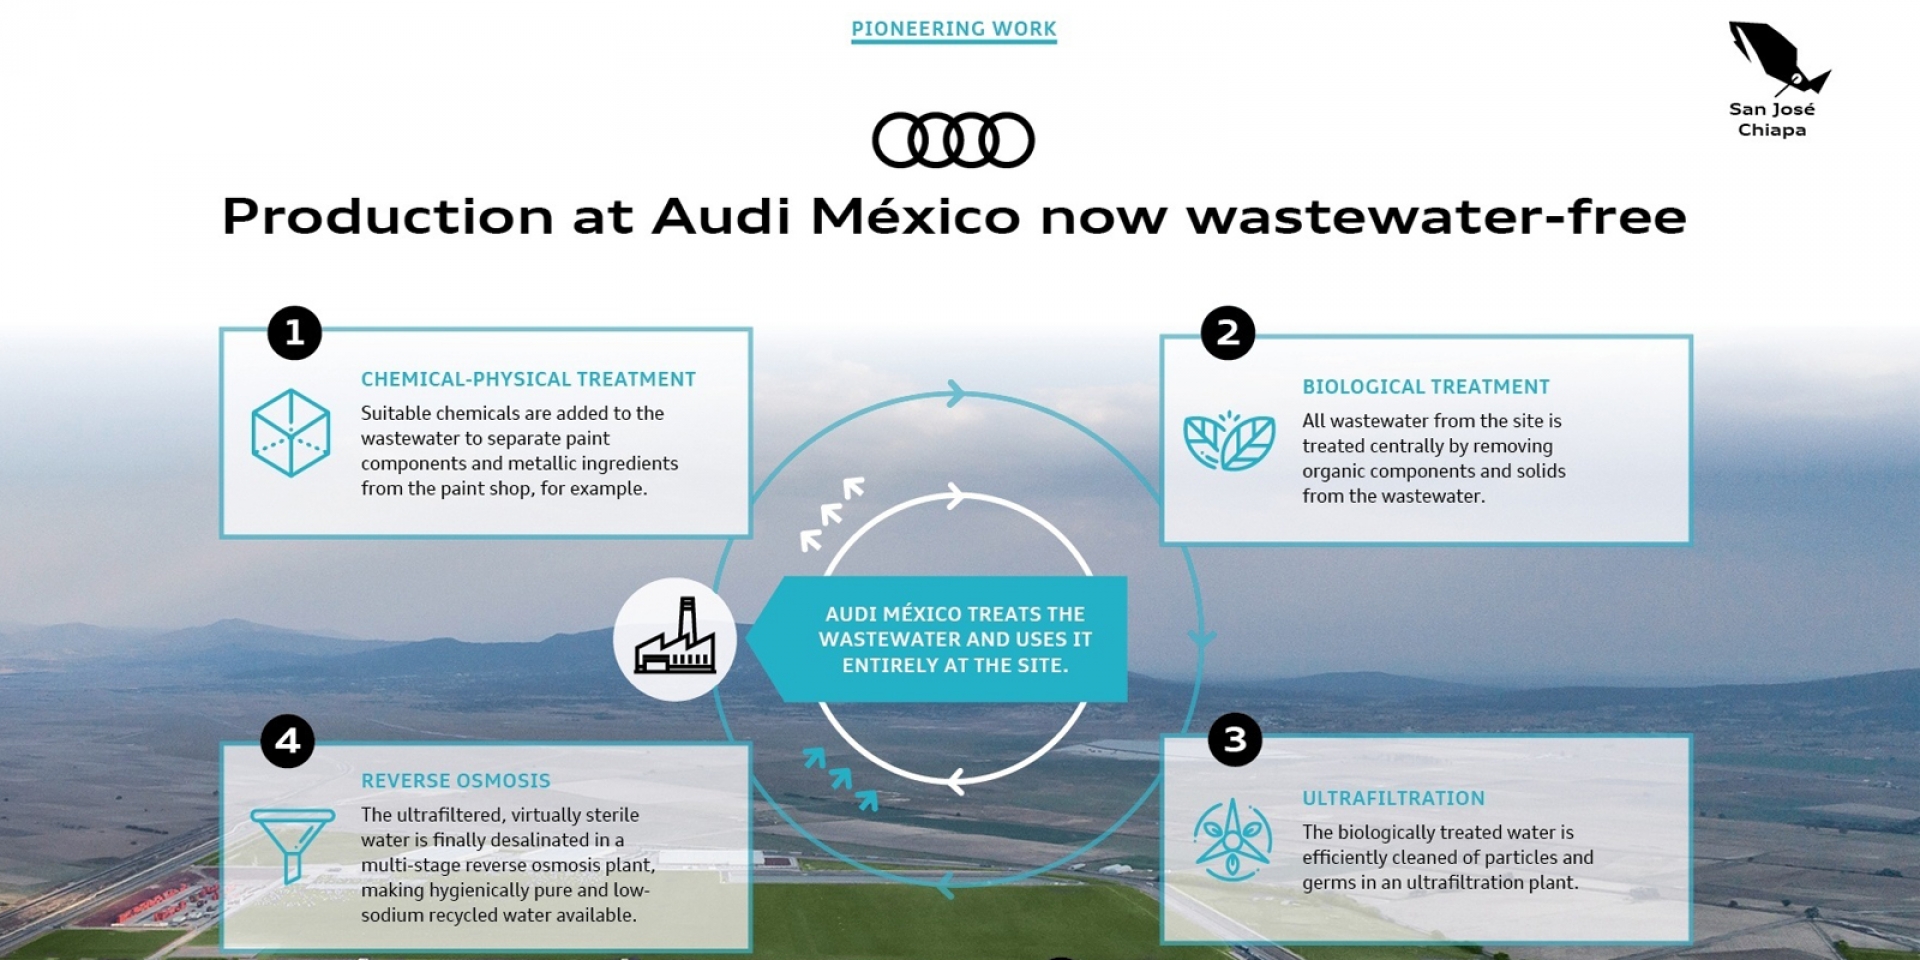 官方新聞稿。落實環境永續發展及友善維護土地 Audi 墨西哥工廠實現100%汽車製程零汙水排放